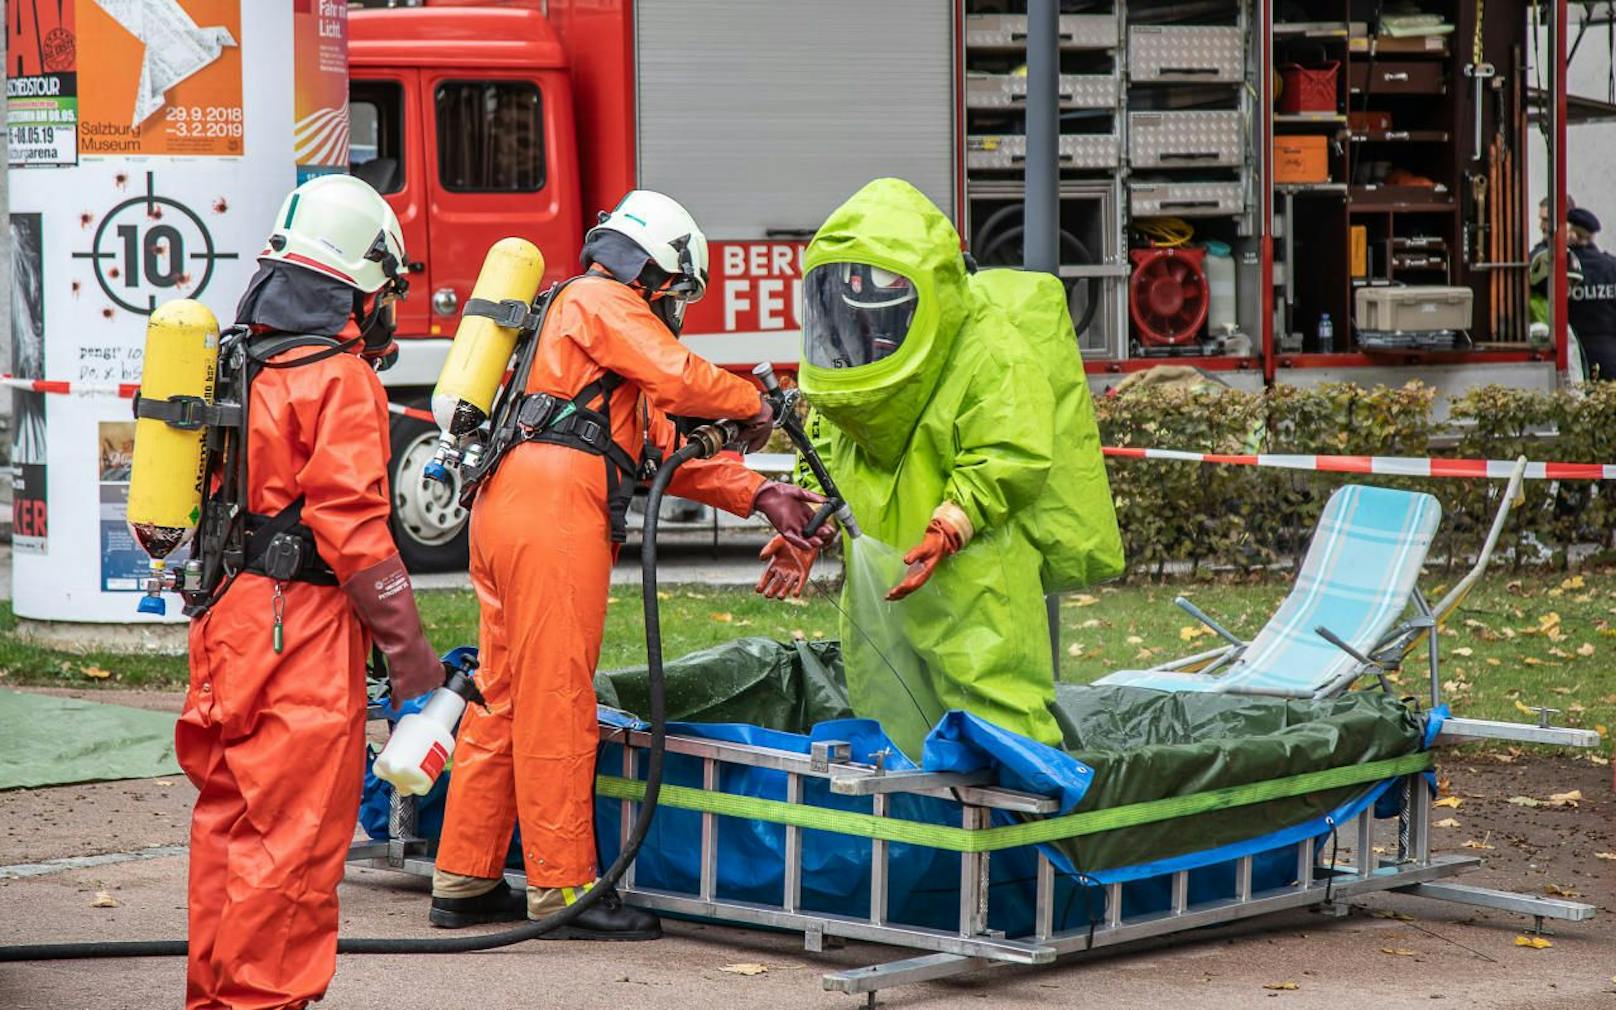 Am Gelände des Landeskrankenhaus Salzburg hat sich am Montag, 29. Oktober 2018, ein Chemieunfall ereignet.